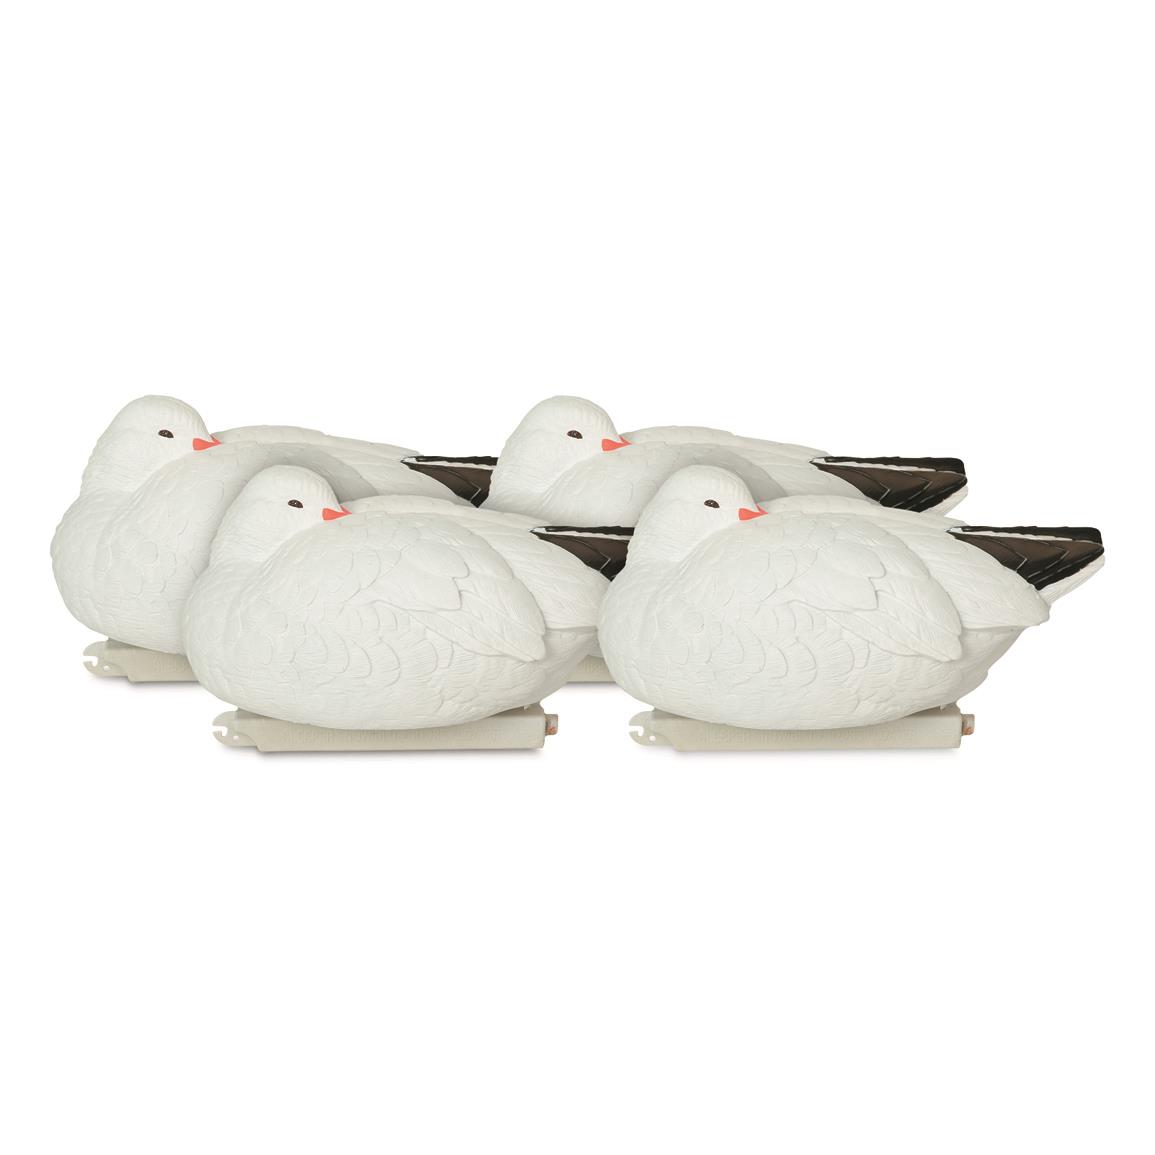 Avery GHG Pro-Grade Snow Goose Sleeper Floater Decoys, 4 Pack